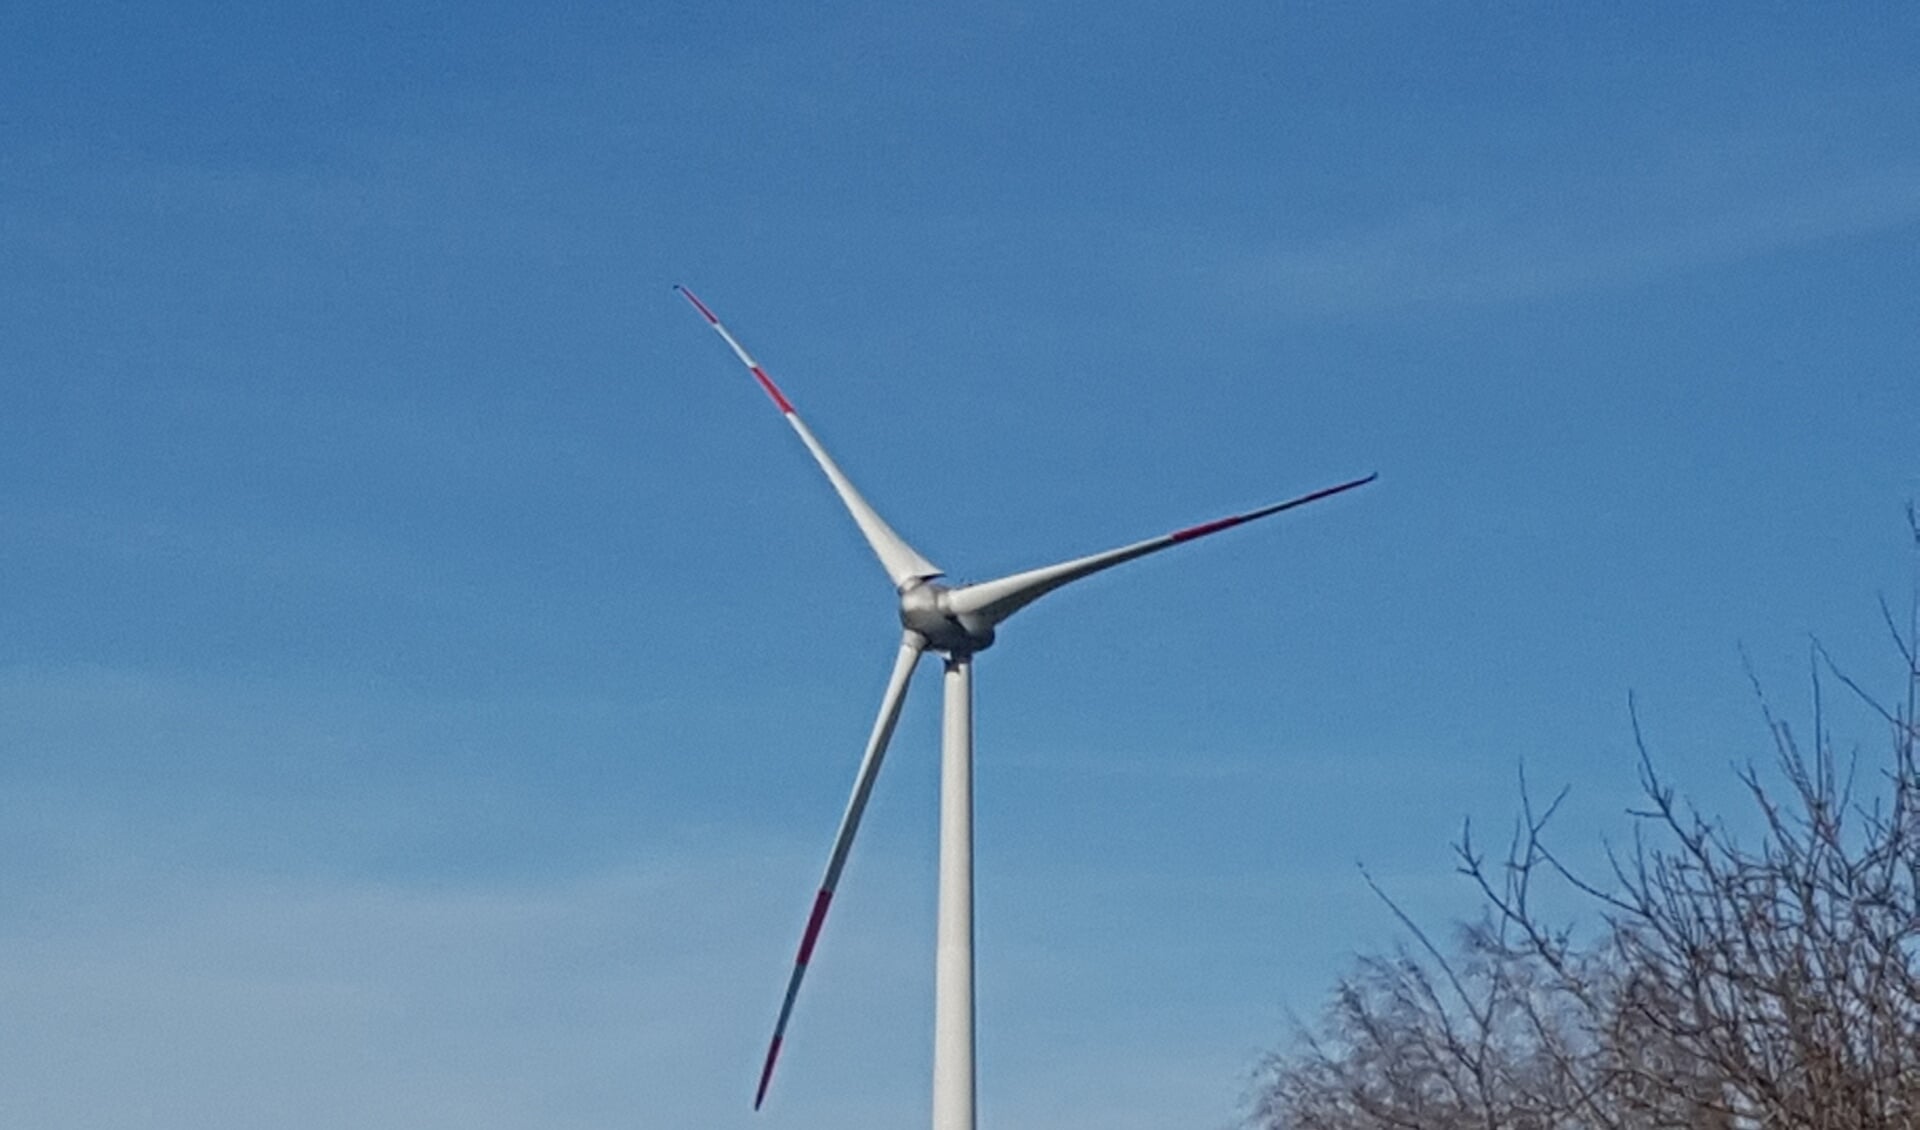 Ook de gemeente Oost Gelre zal niet ontkomen aan plaatsen van windmolens om duurzame energie te kunnen opwekken. foto: Kyra Broshuis